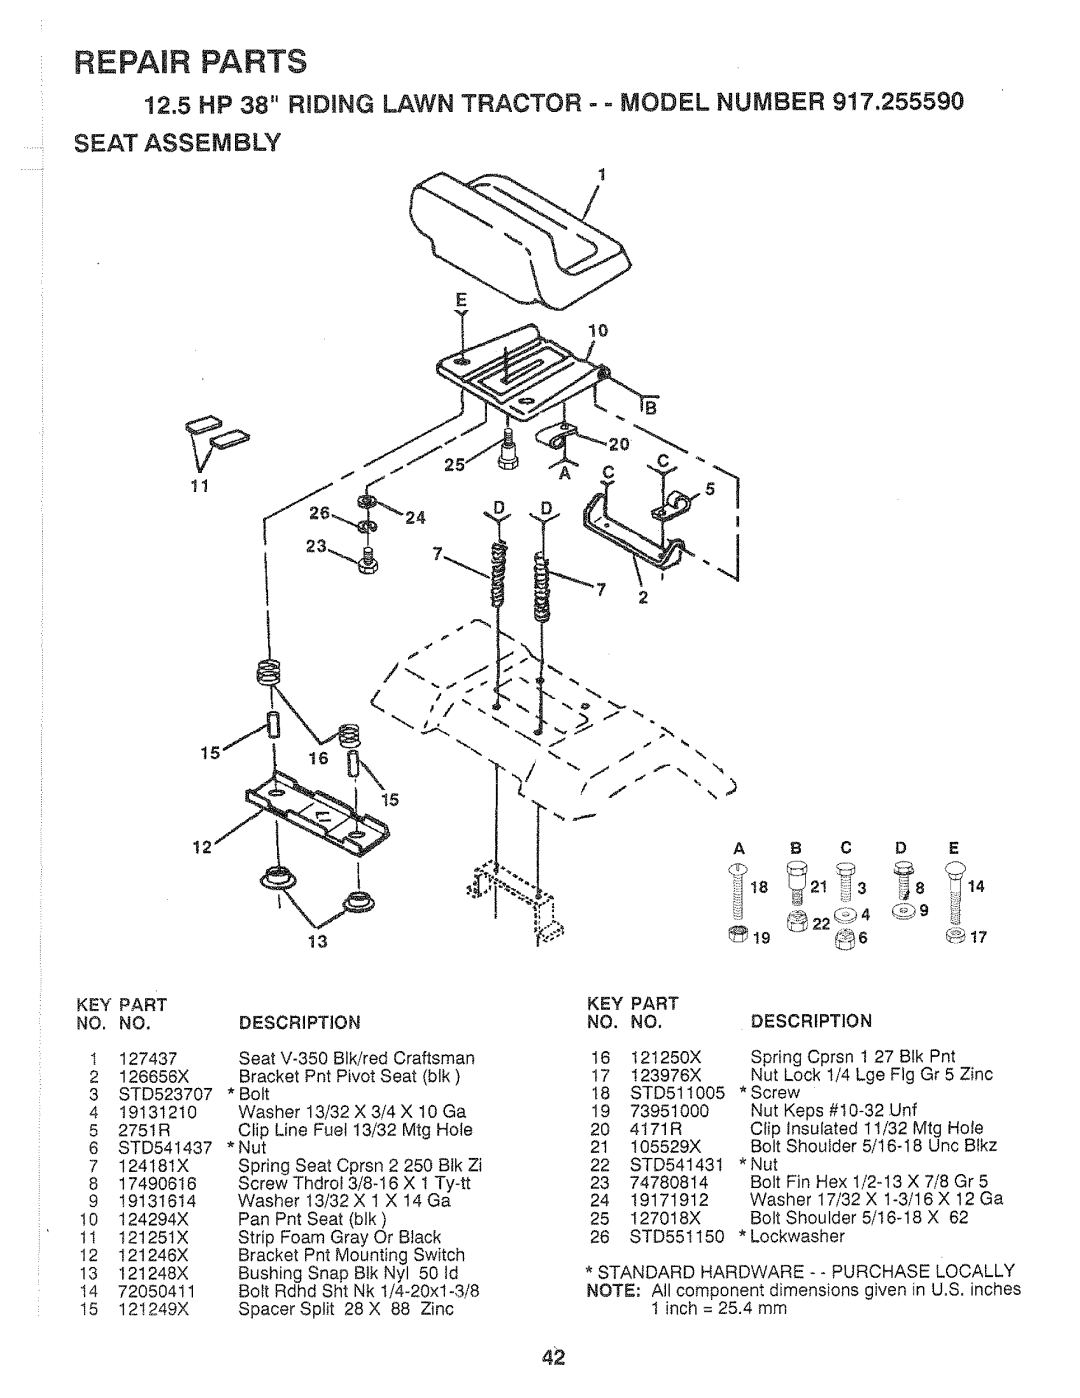 Sears 917.25559 manual Seat Assem Bly, Repair Parts 